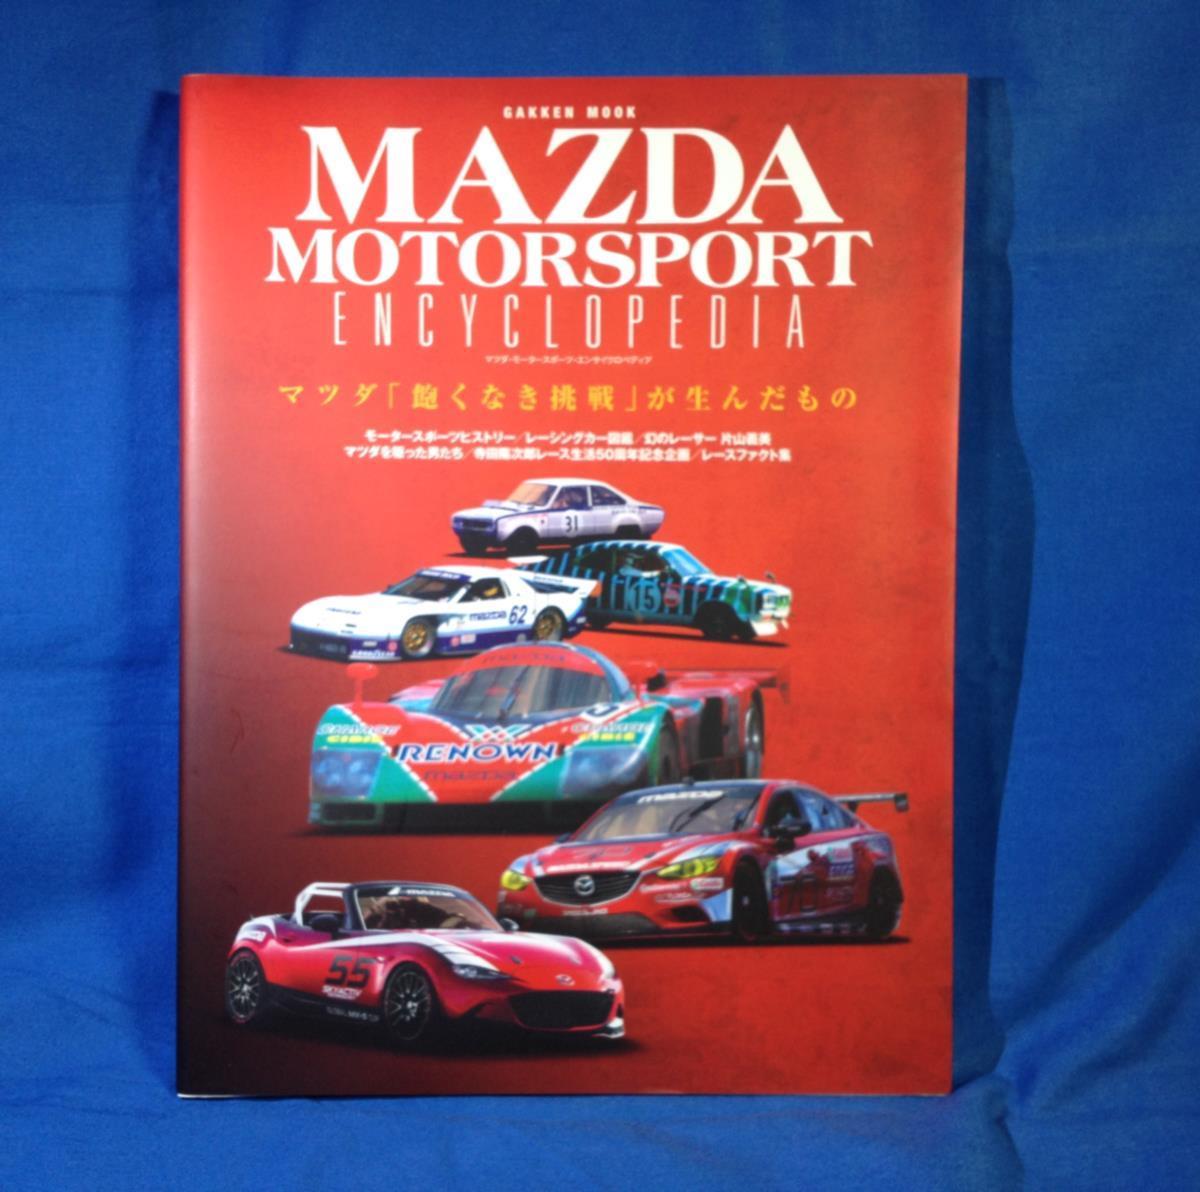  Mazda Motor Sport en носорог черный petia Gakken 9784056108798 Works деятельность Ла Манш WRC Северная Америка IMSA иллюзия. Racer одна сторона гора . прекрасный 